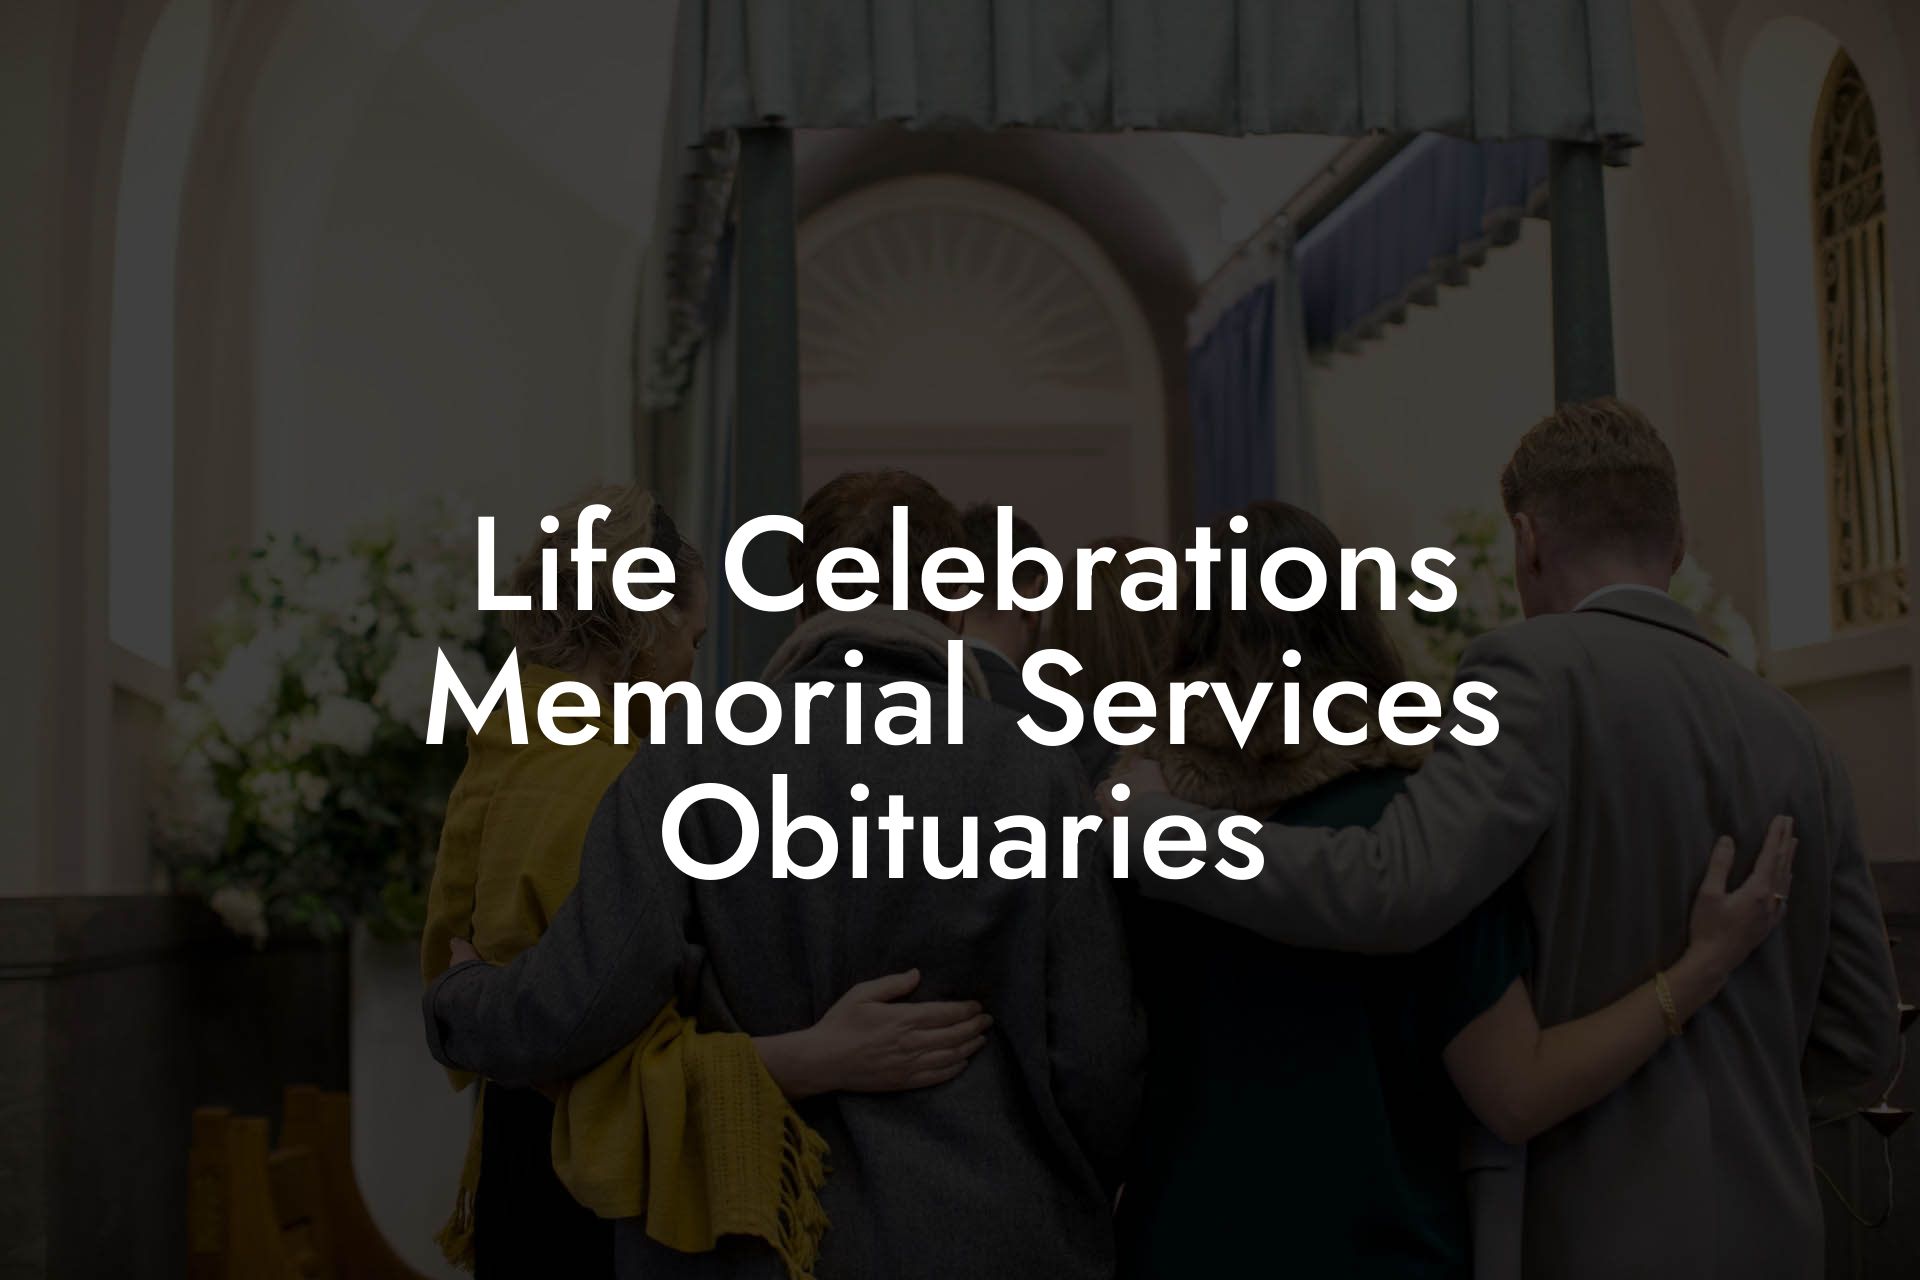 Life Celebrations Memorial Services Obituaries